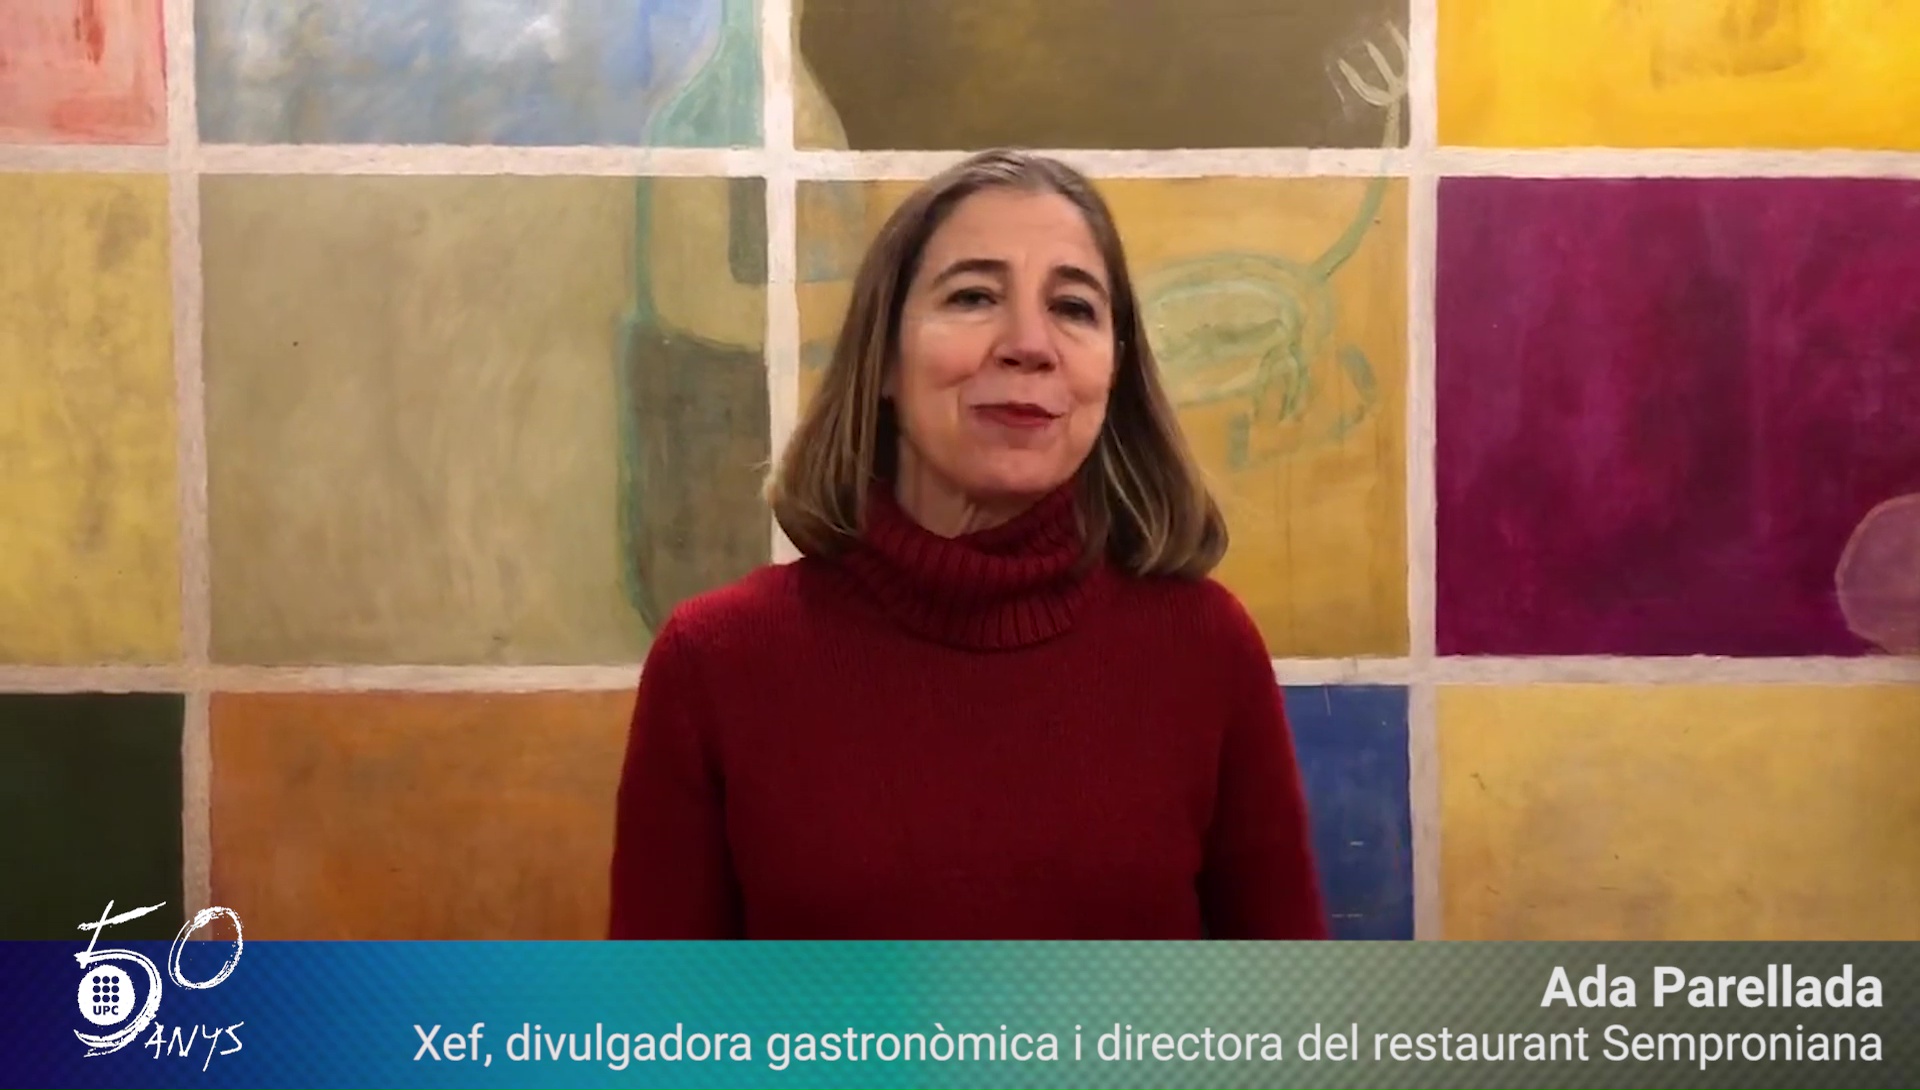 Ada Parellada, xef i divulgadora gastronòmica, felicita els #50anysUPC